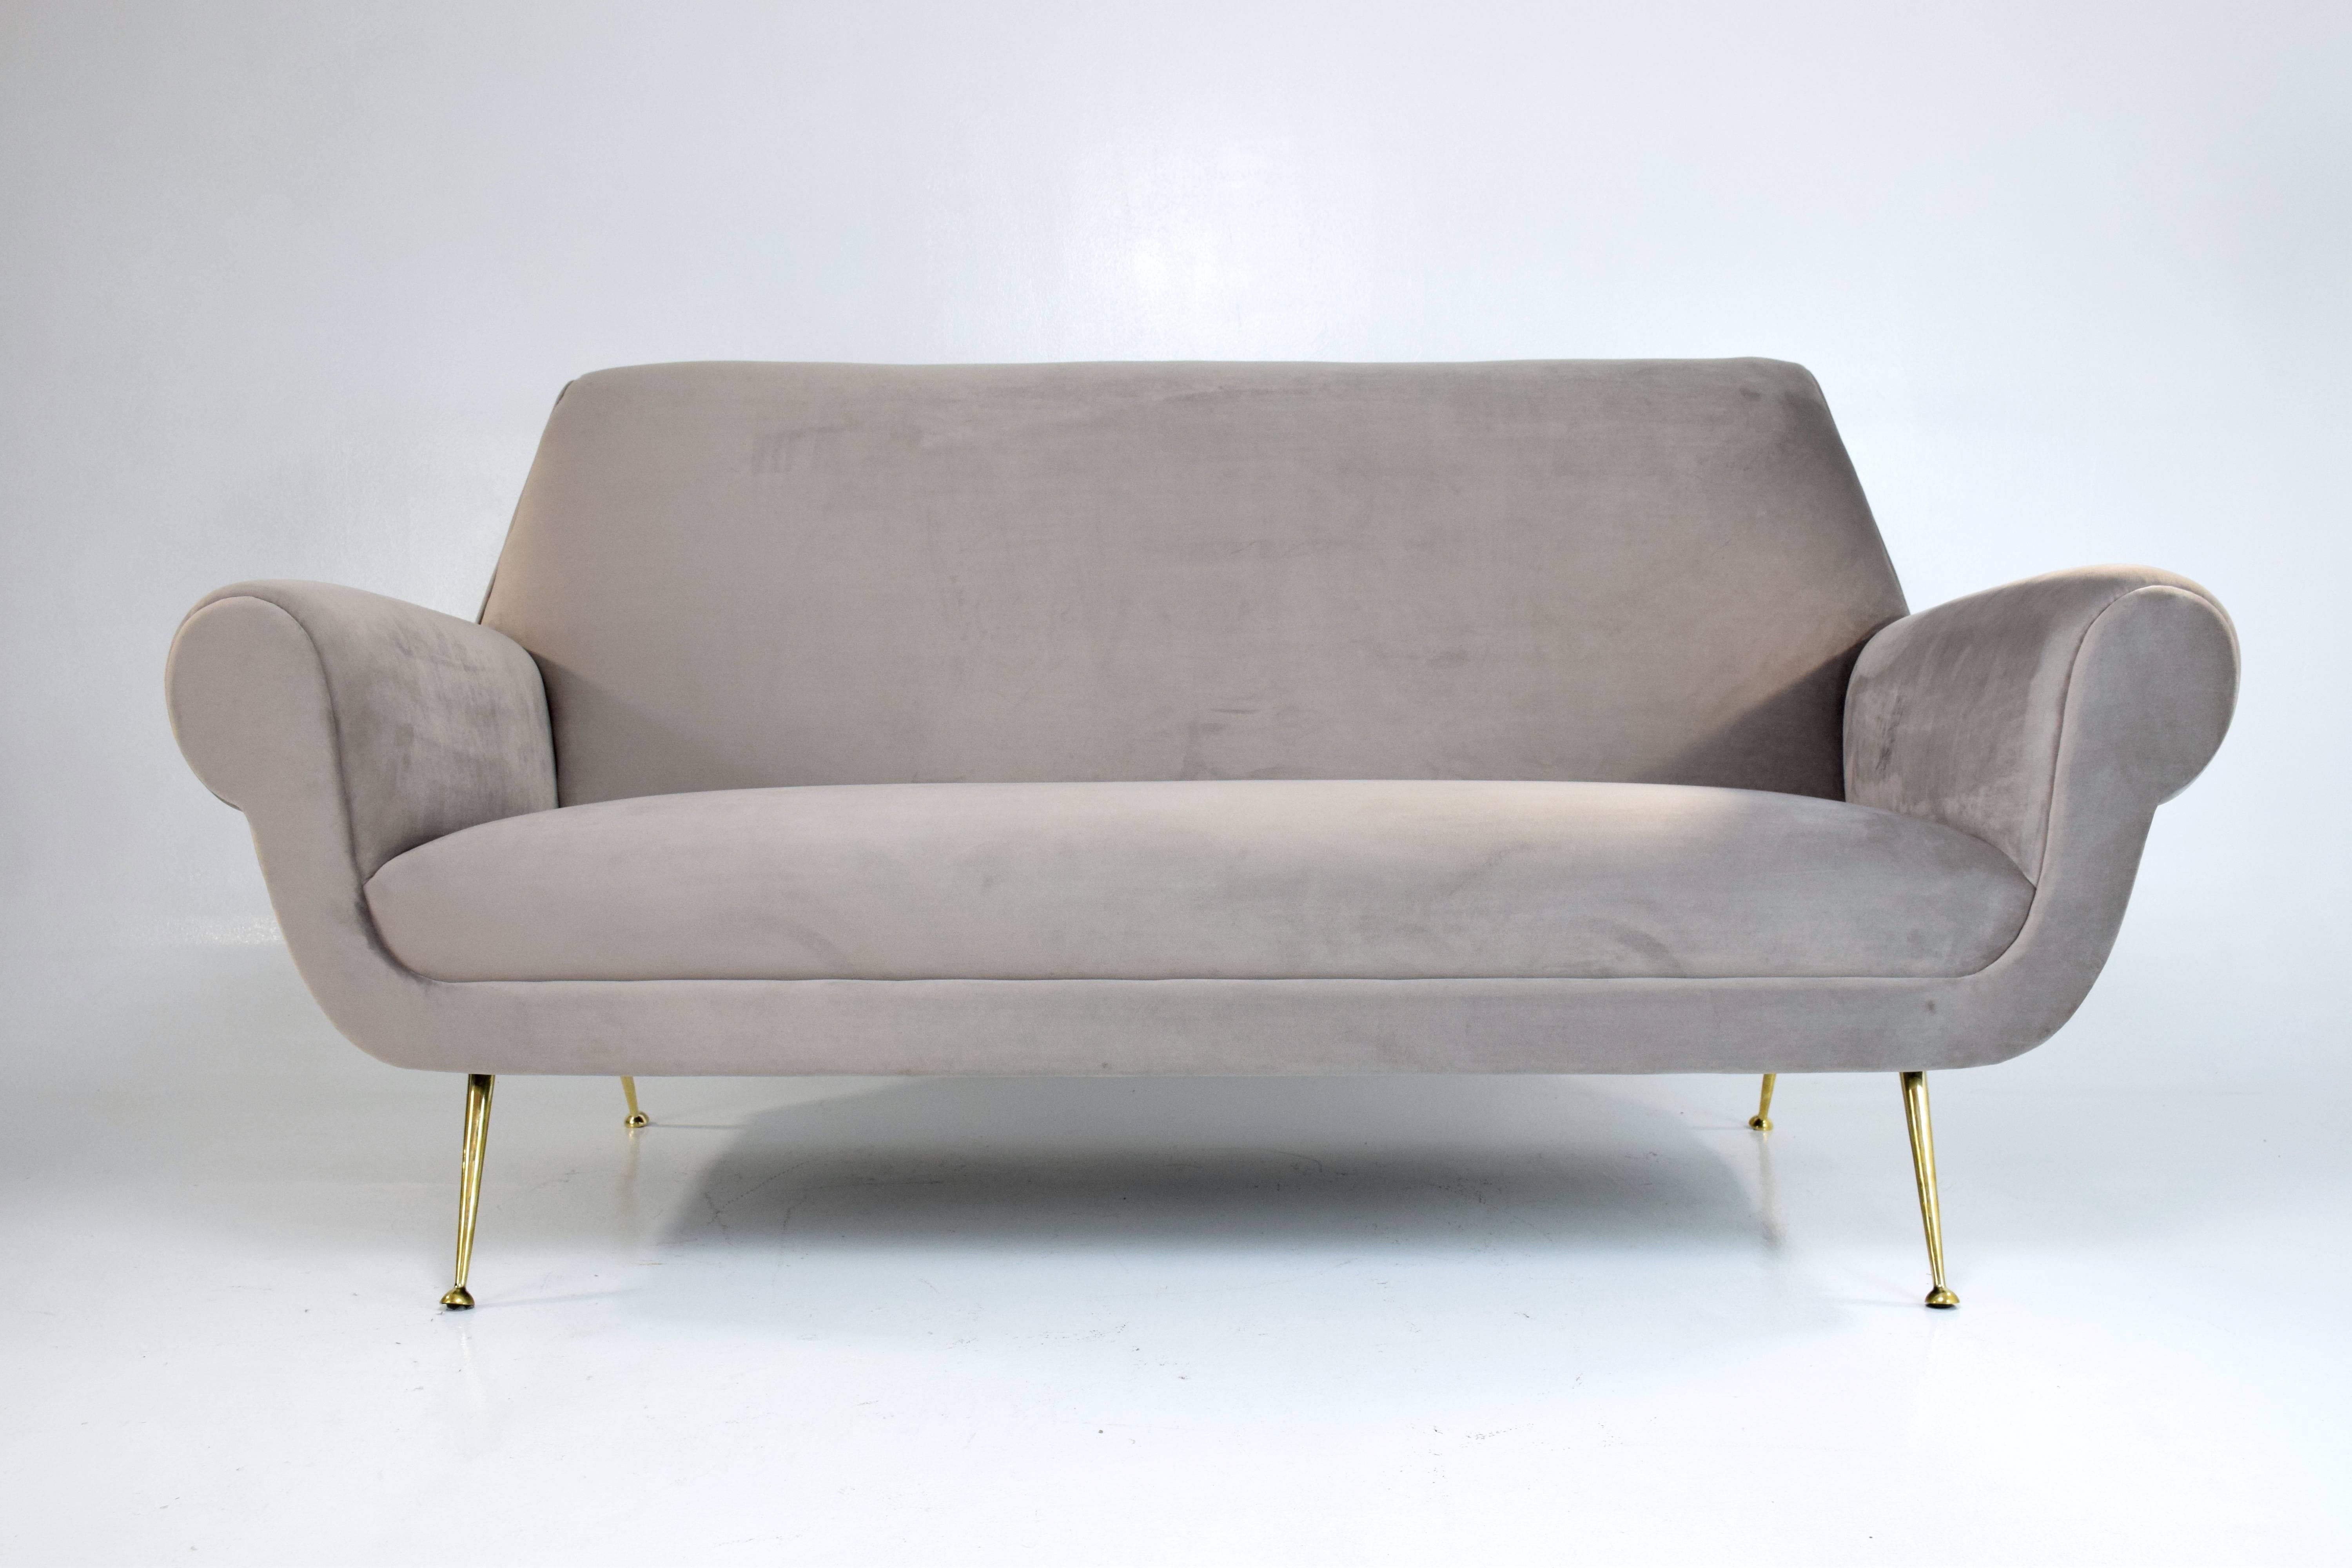 Steel Italian Midcentury Restored Velvet Sofa by Gigi Radice for Minotti, 1950s